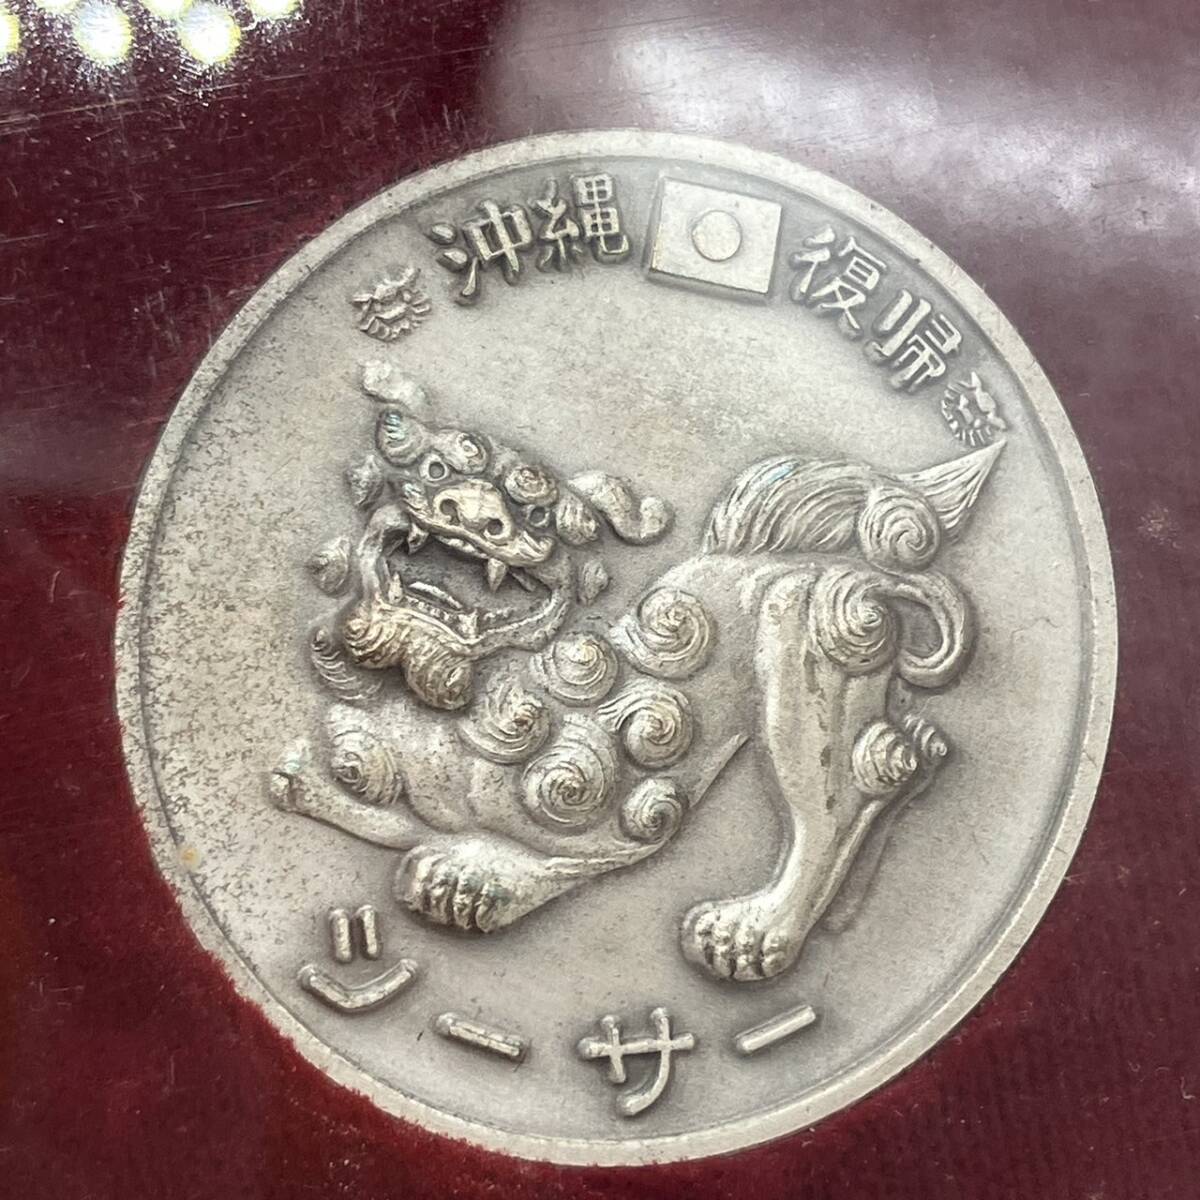 1972 純銀 沖縄復帰記念メダル 硬貨 3枚セット コインの画像4